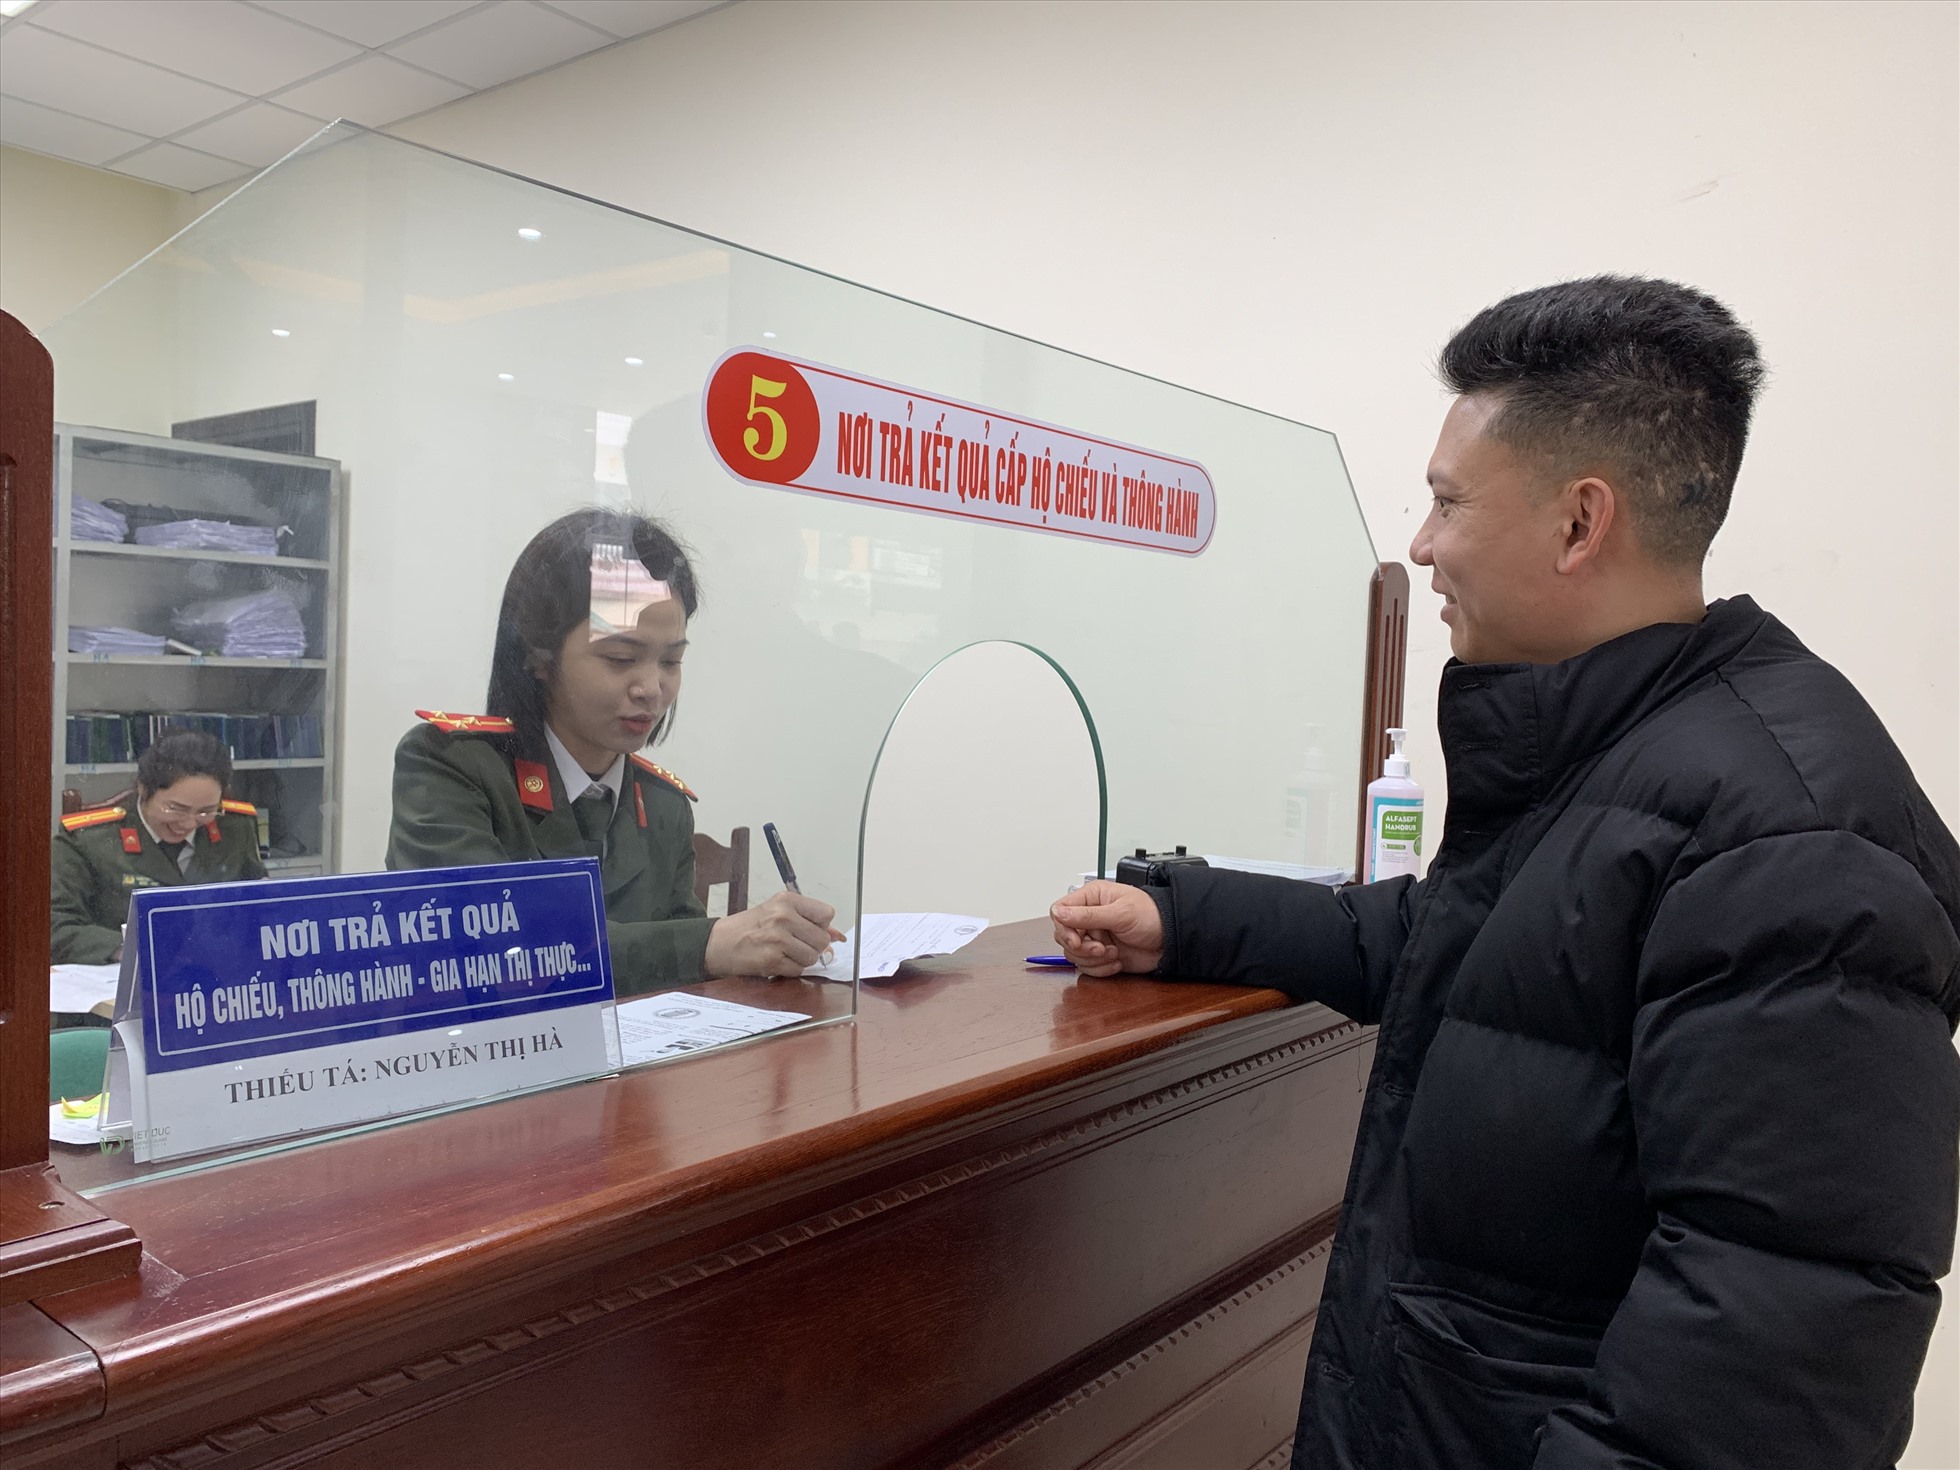 Cán bộ công an trả kết quả hộ chiếu, thông hành- Gia hạn thị thực cho người dân. Ảnh: Quỳnh Trang